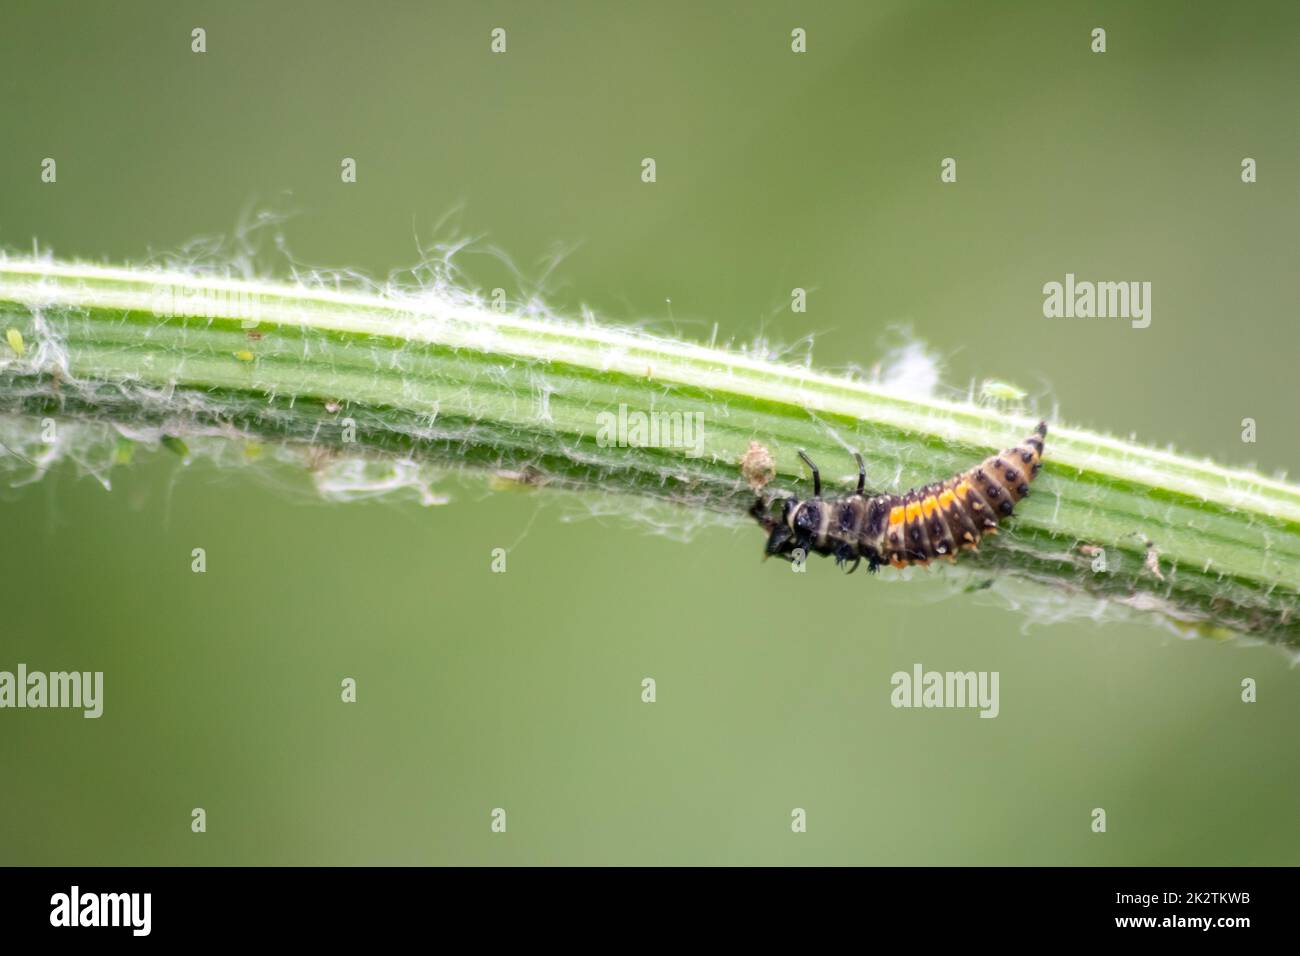 Neugeborene Marienkäfer, die grünes Blatt ausscheiden, wechselt von Larve zu Marienkäfer-Käfer mit schwarzen Punkten rote Flügel zeigen neugeborene Glückspilze Harmonie natürliche Schädlingsbekämpfung in der Landwirtschaft Stockfoto